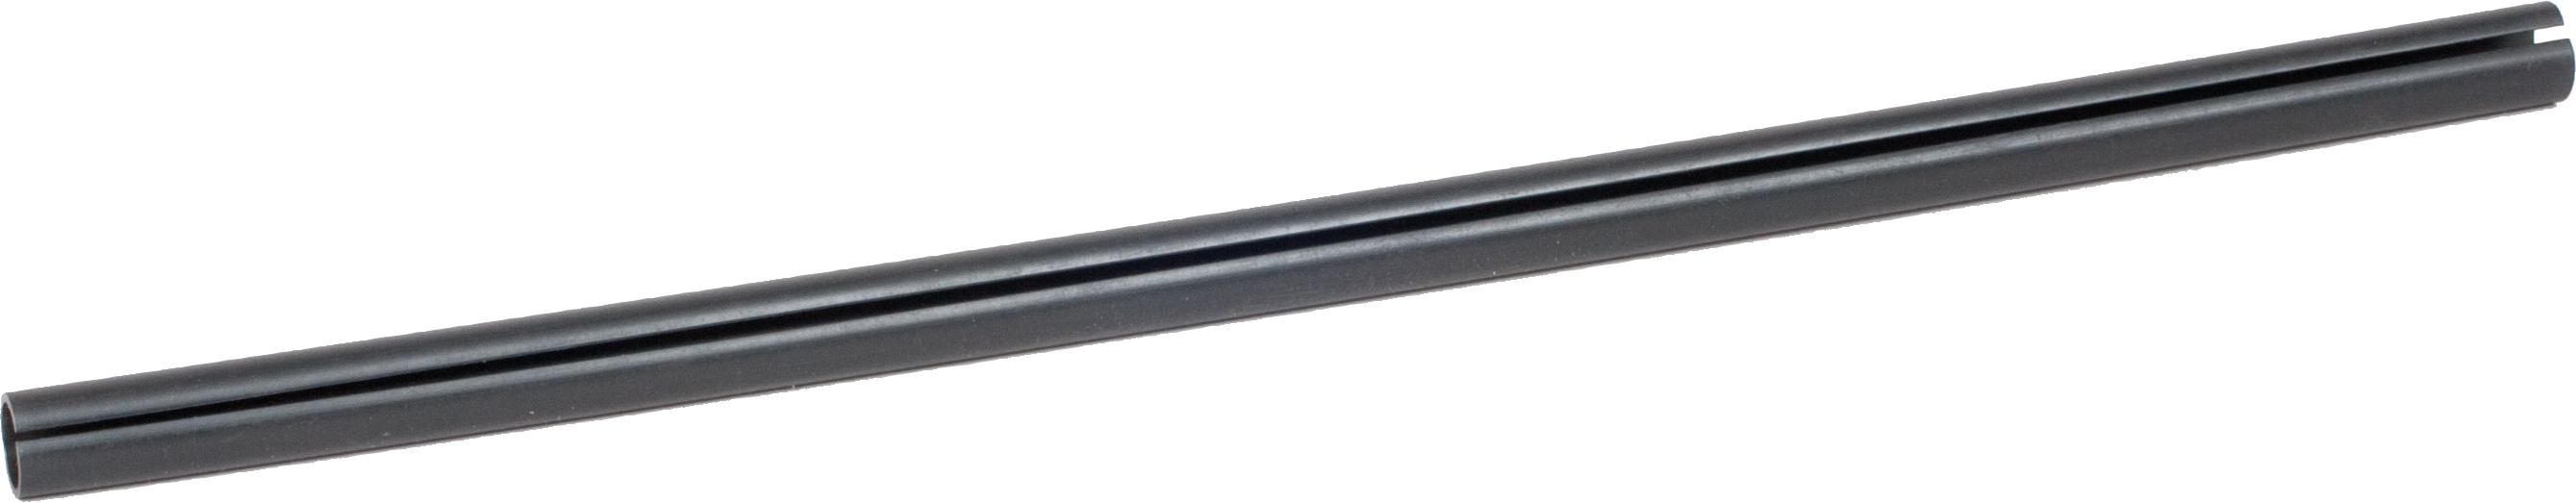 PVC-Schutzprofil für Metallpfosten Länge 50 cm